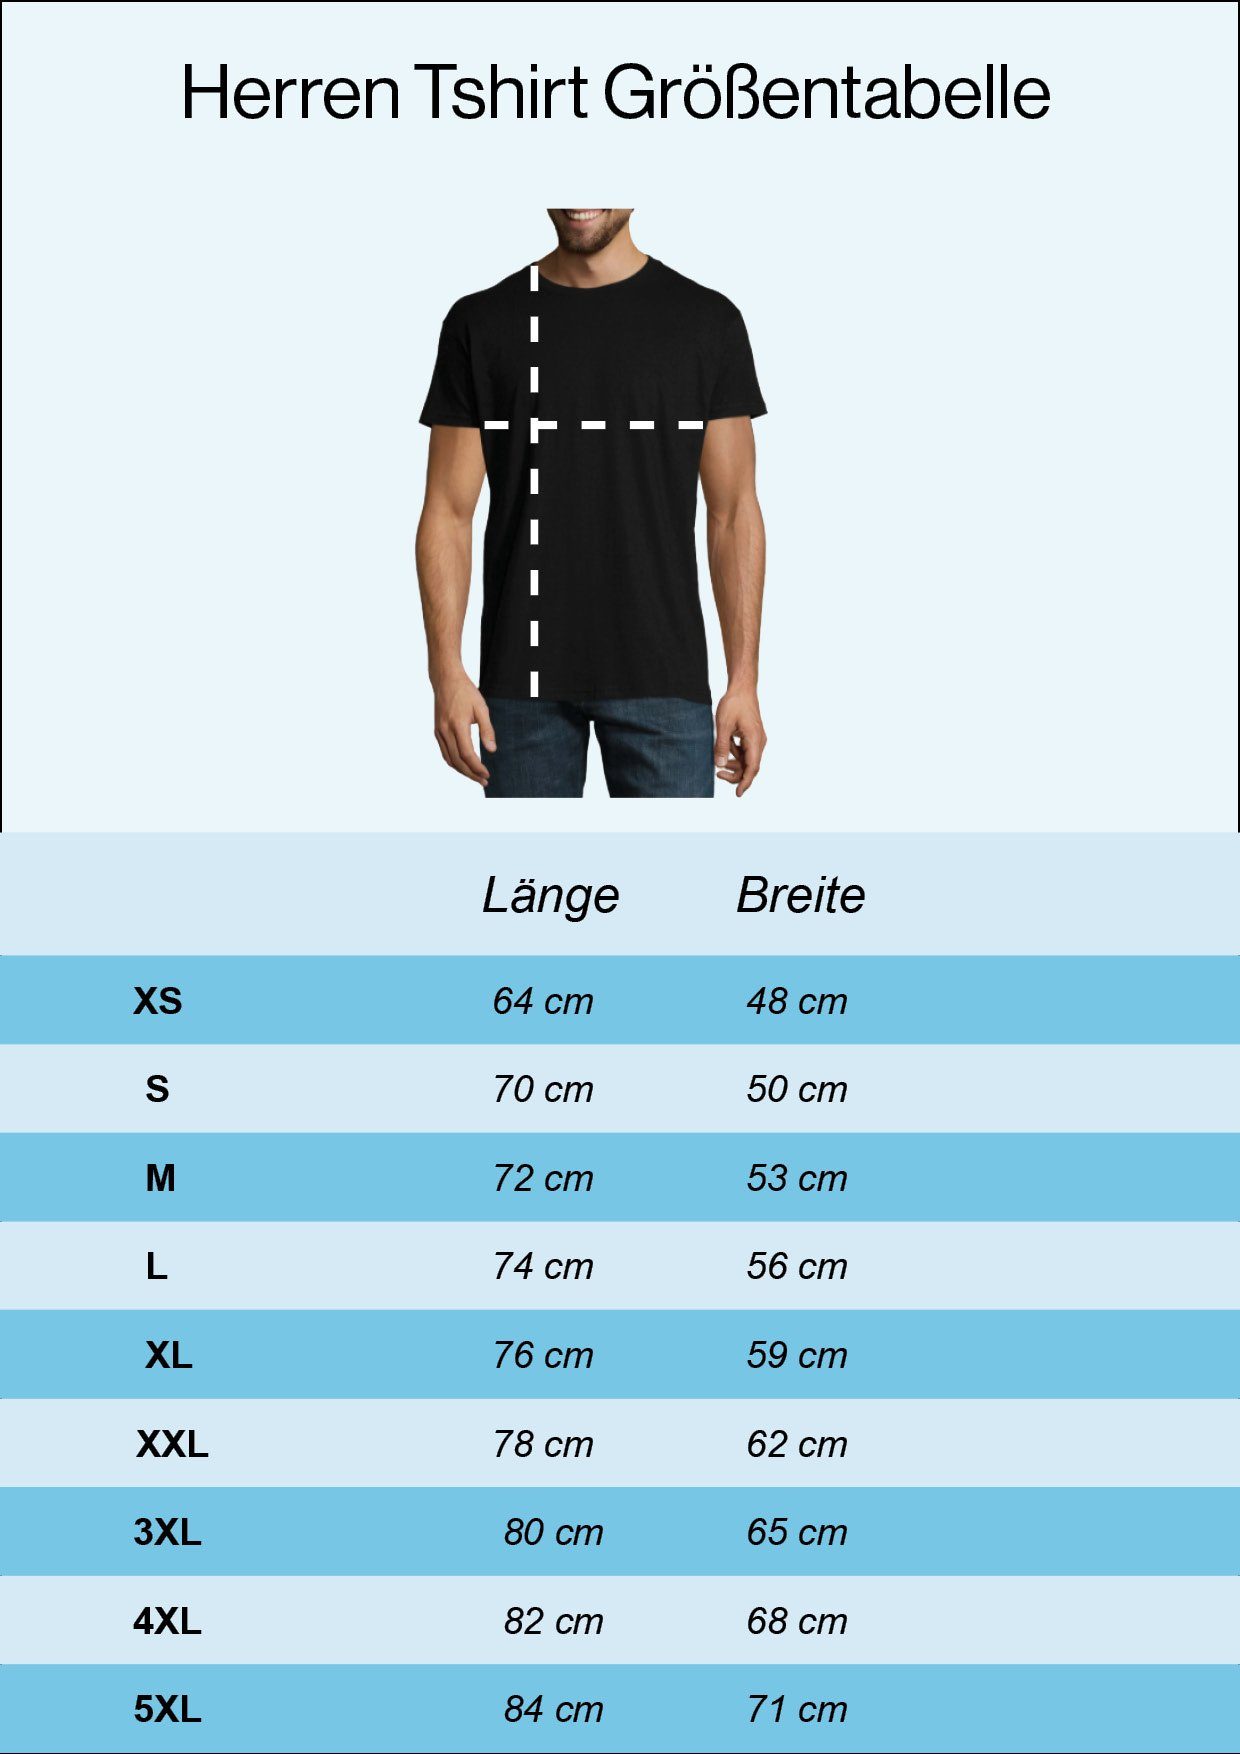 Designz Weiss mit T-Shirt Trooper T-Shirt Fun trendigem Youth Herren Frontprint Storm